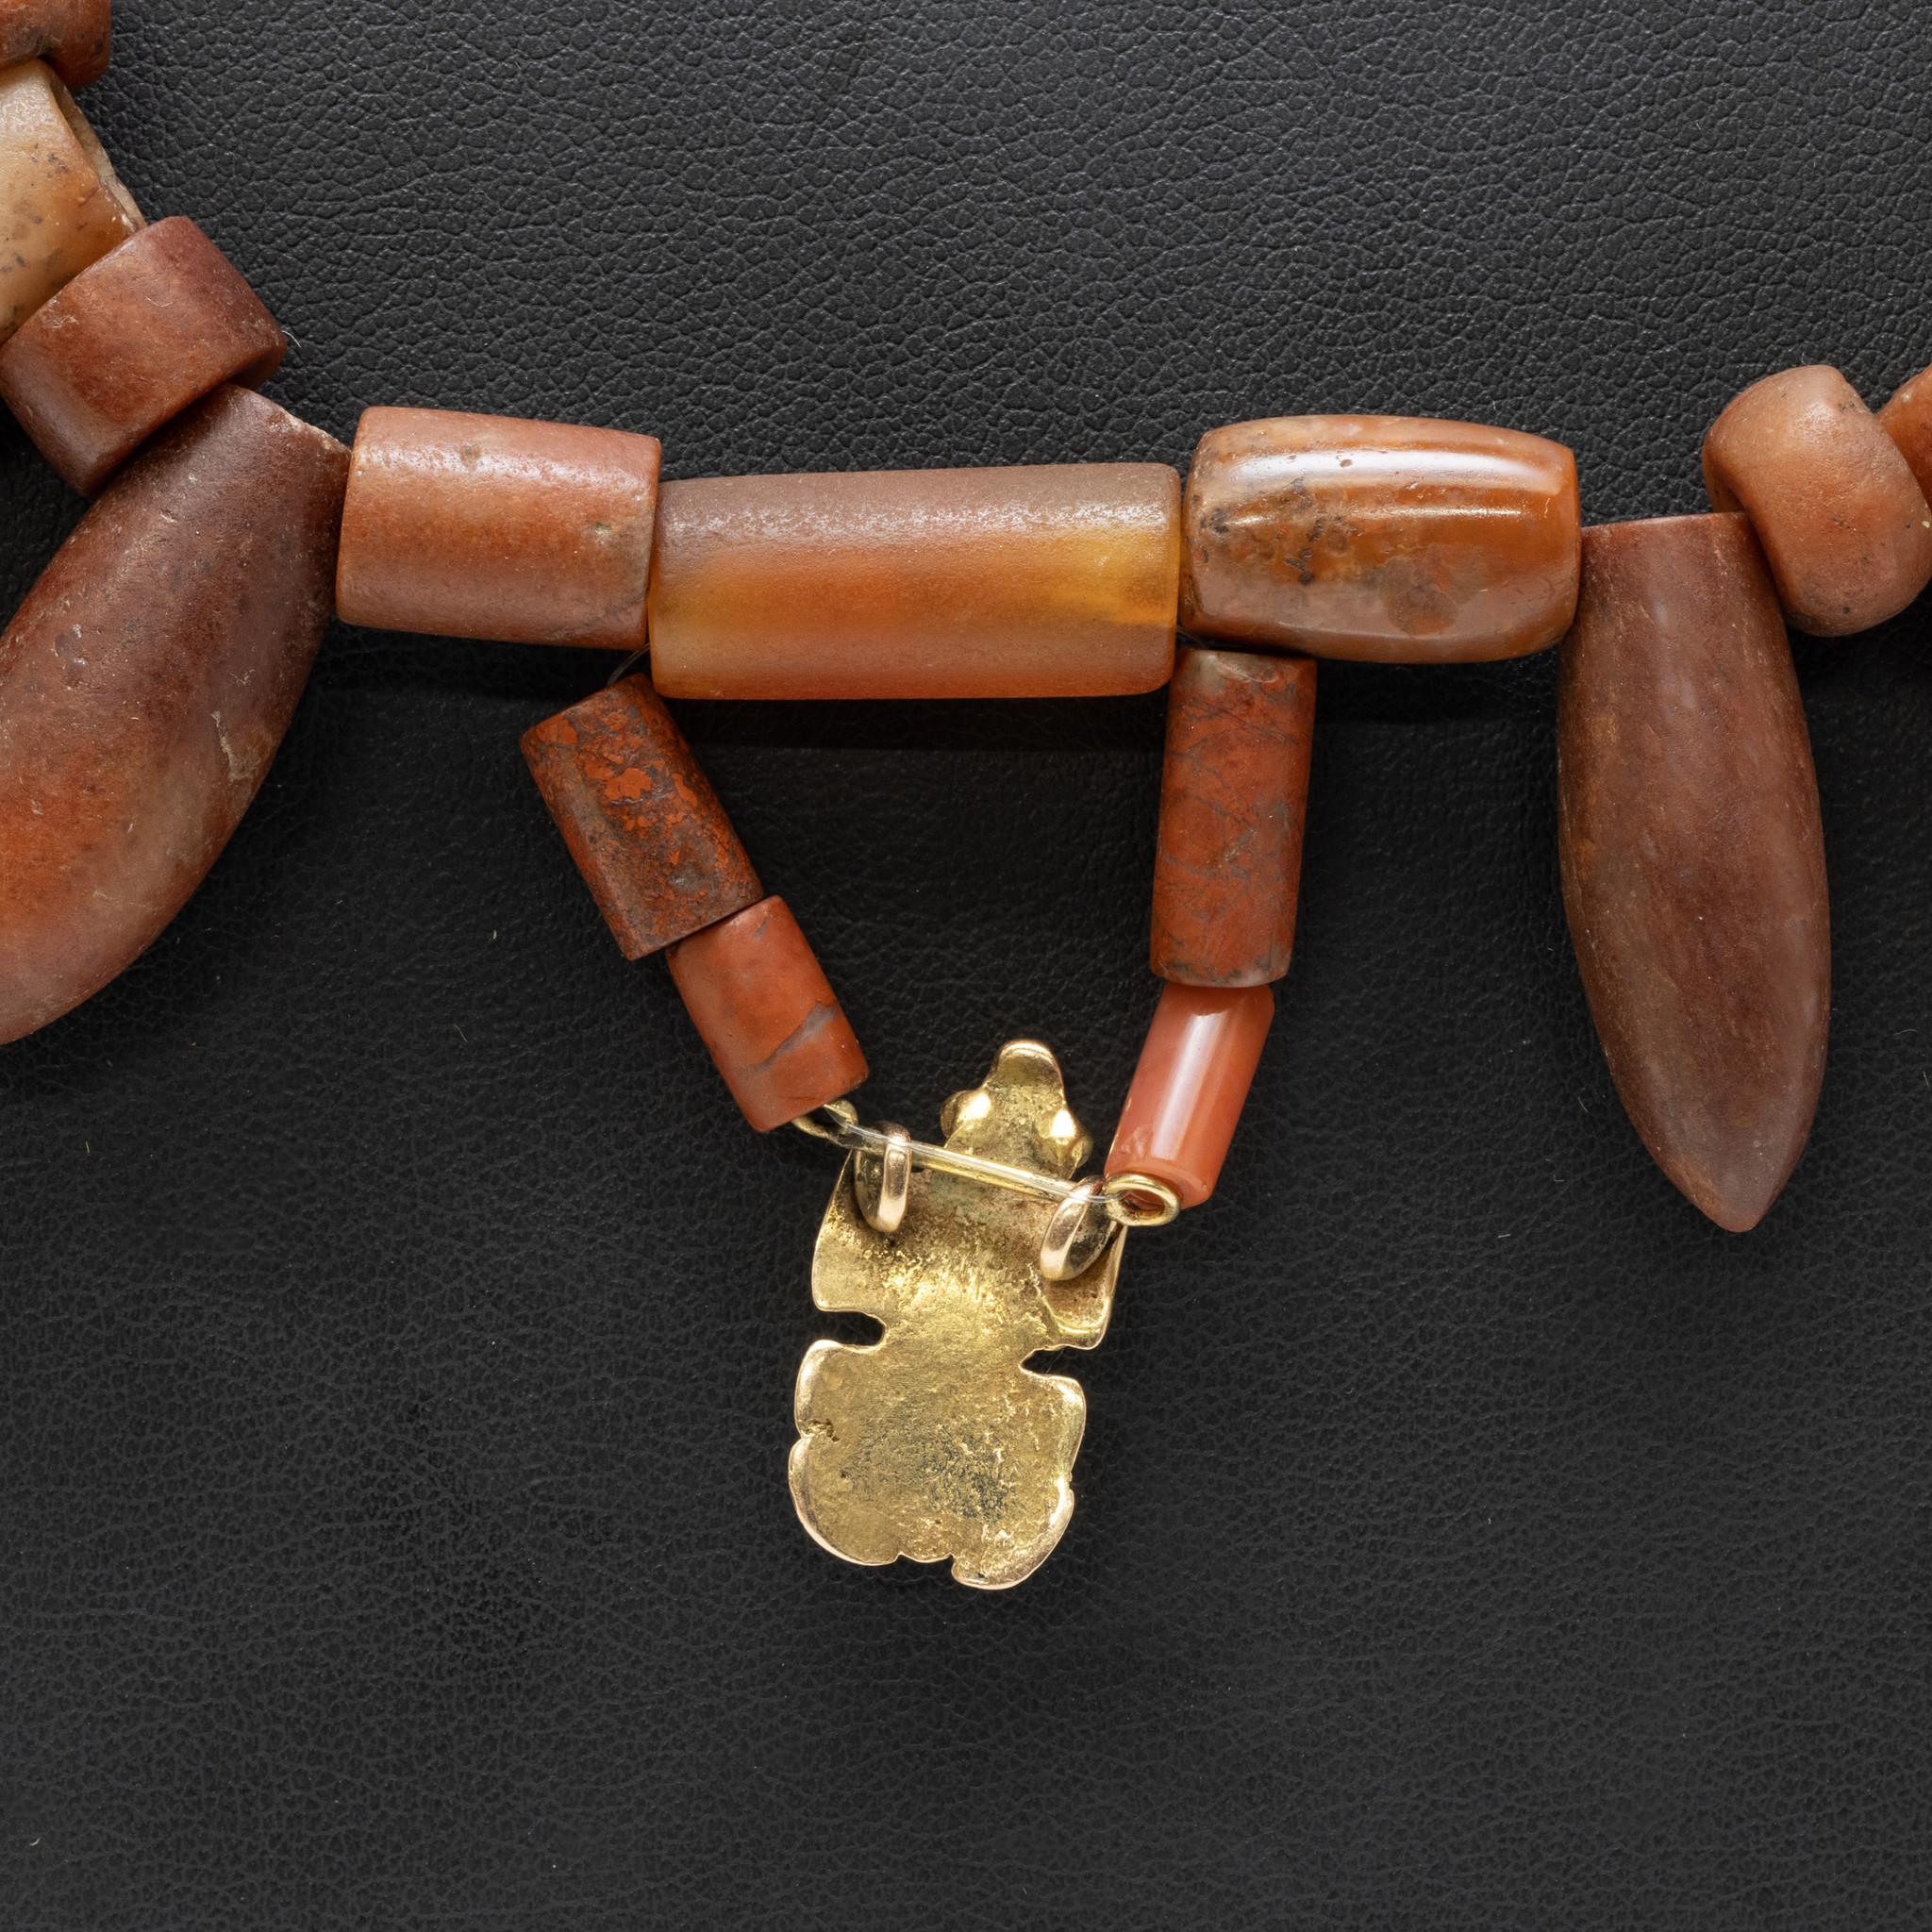 Prä-Columbianisch, Nordkolumbien, Tairona-Kultur, ca. 800 bis 1500 CE. Eine wunderbare Halskette von tragbarer Form, die aus Dutzenden von handgeschnitzten Karneolperlen besteht. Dutzende von zusätzlichen Grünsteinperlen säumen den oberen Teil der